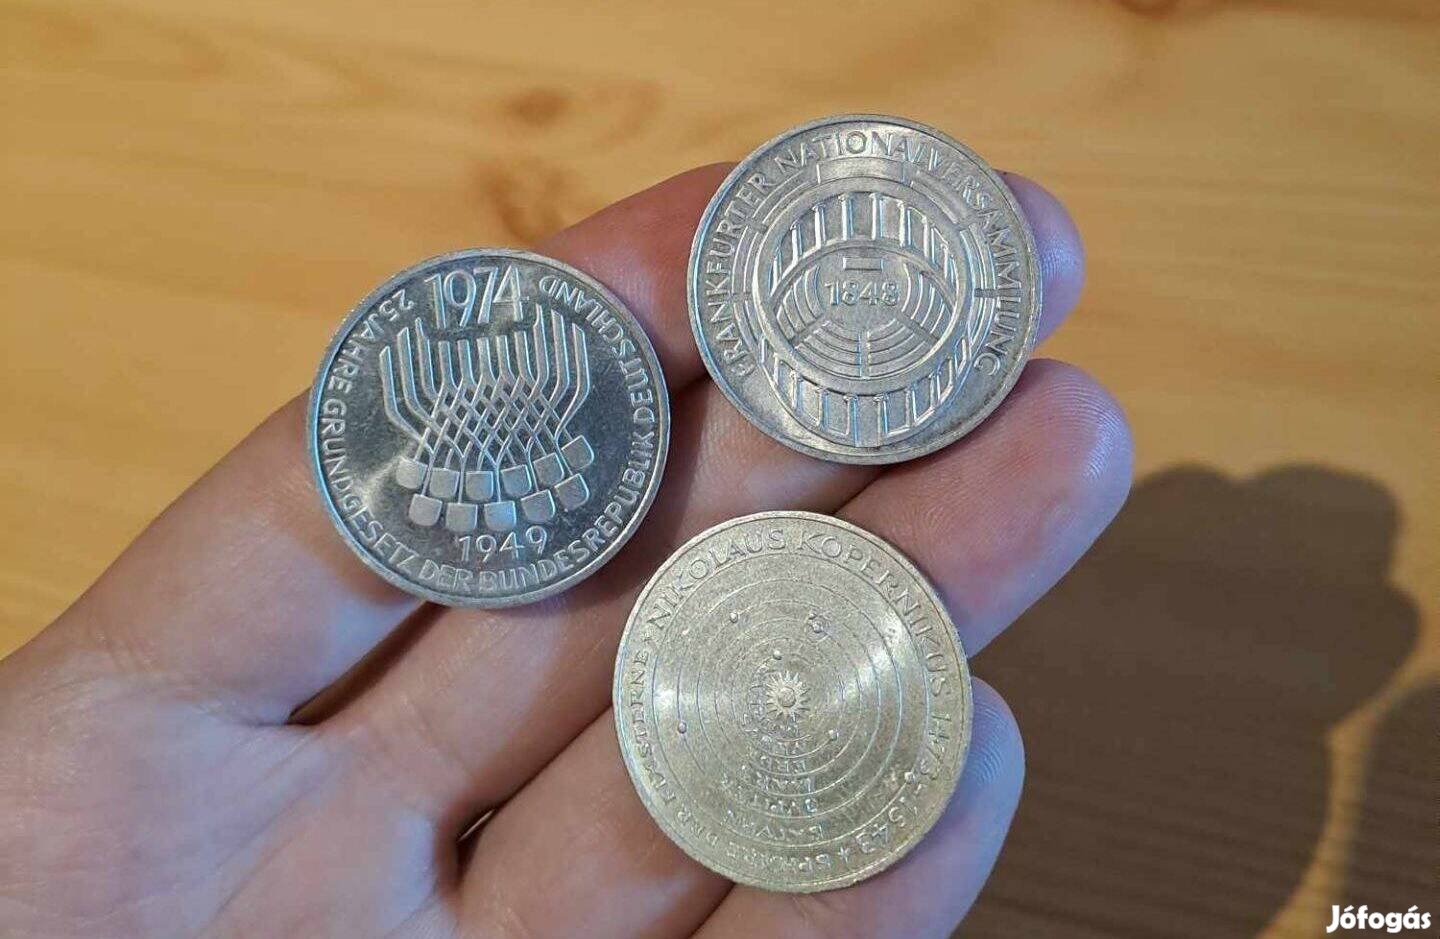 Németország ezüst 5 márka érme